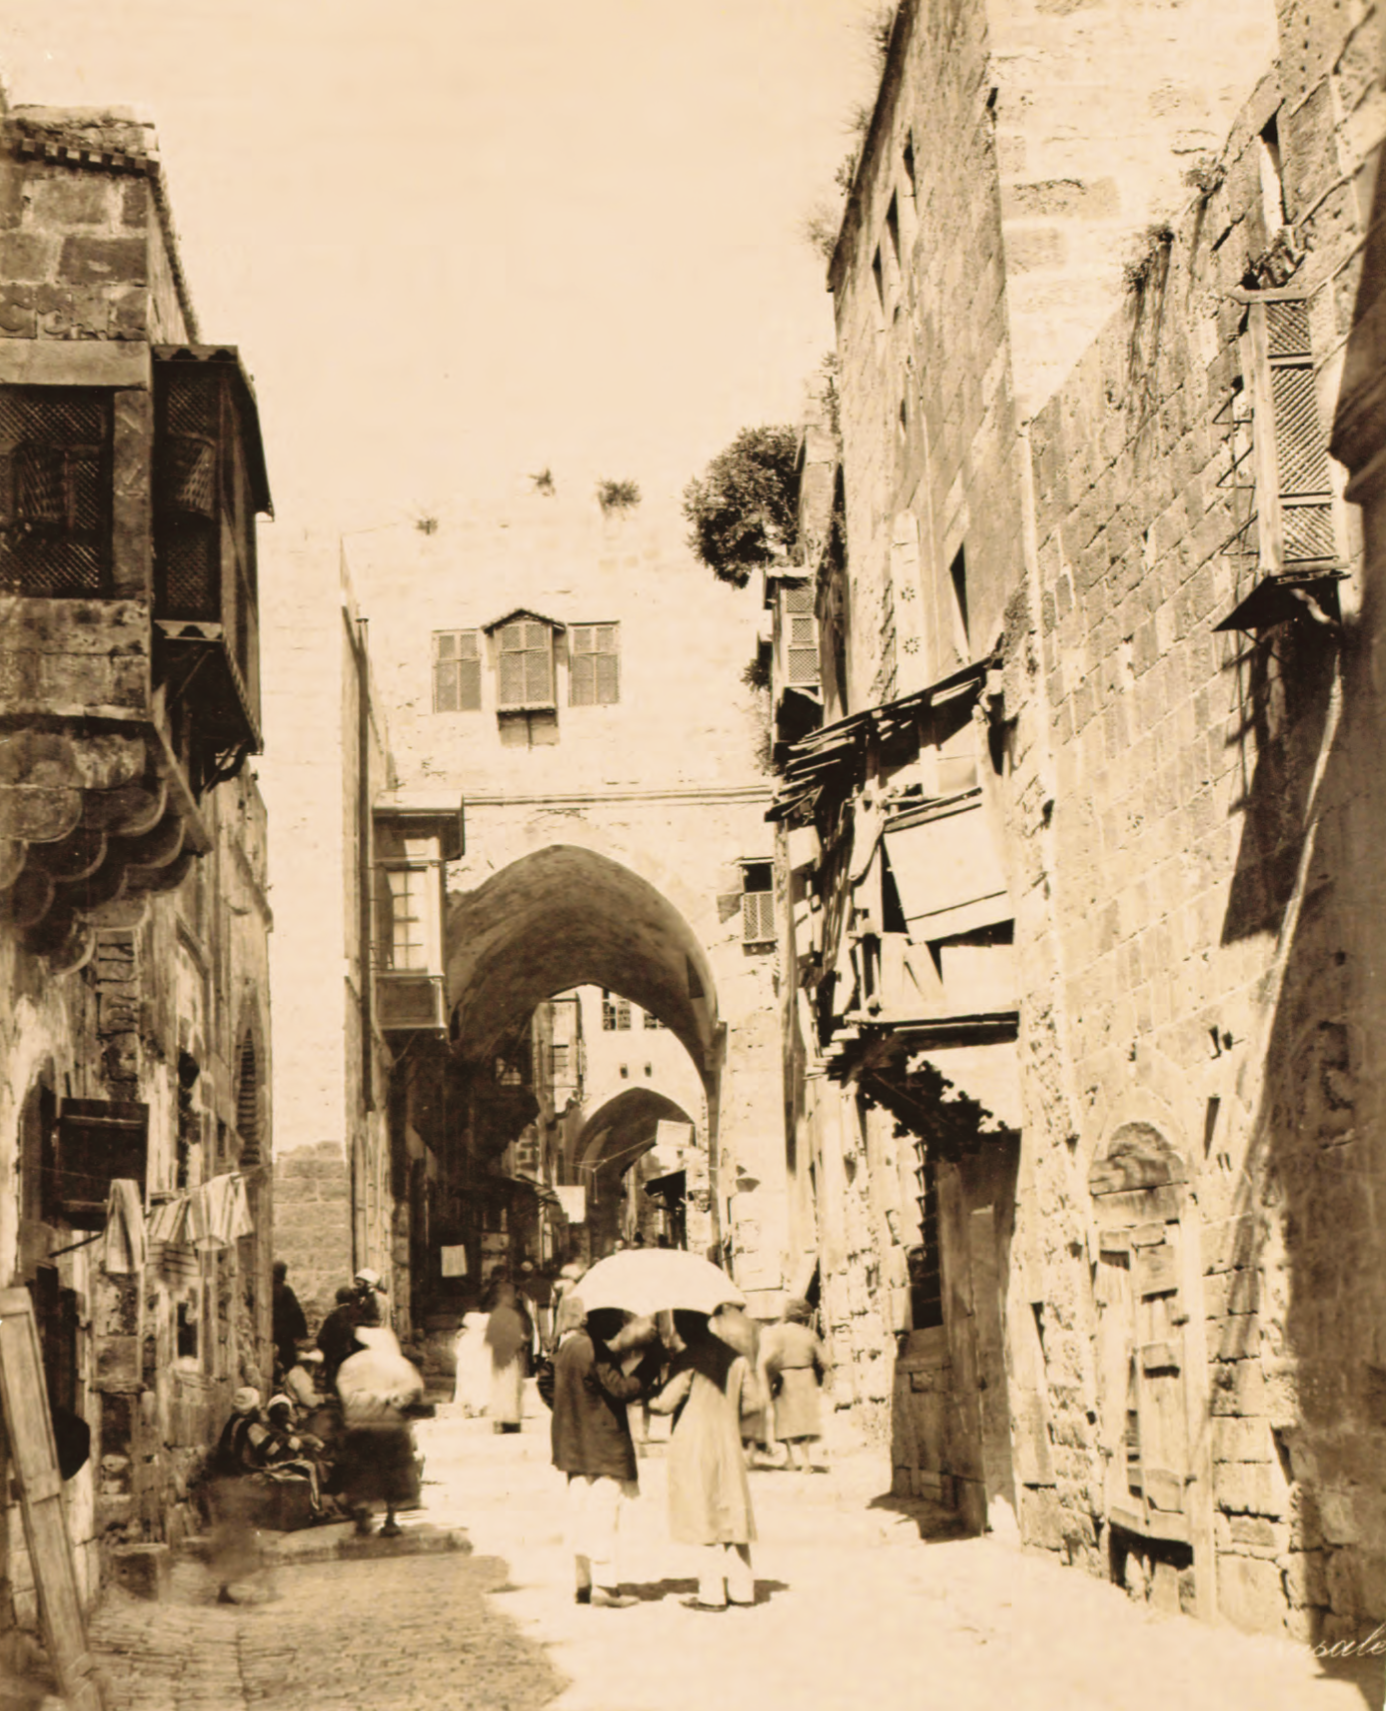 A back alley in Ottoman Jerusalem